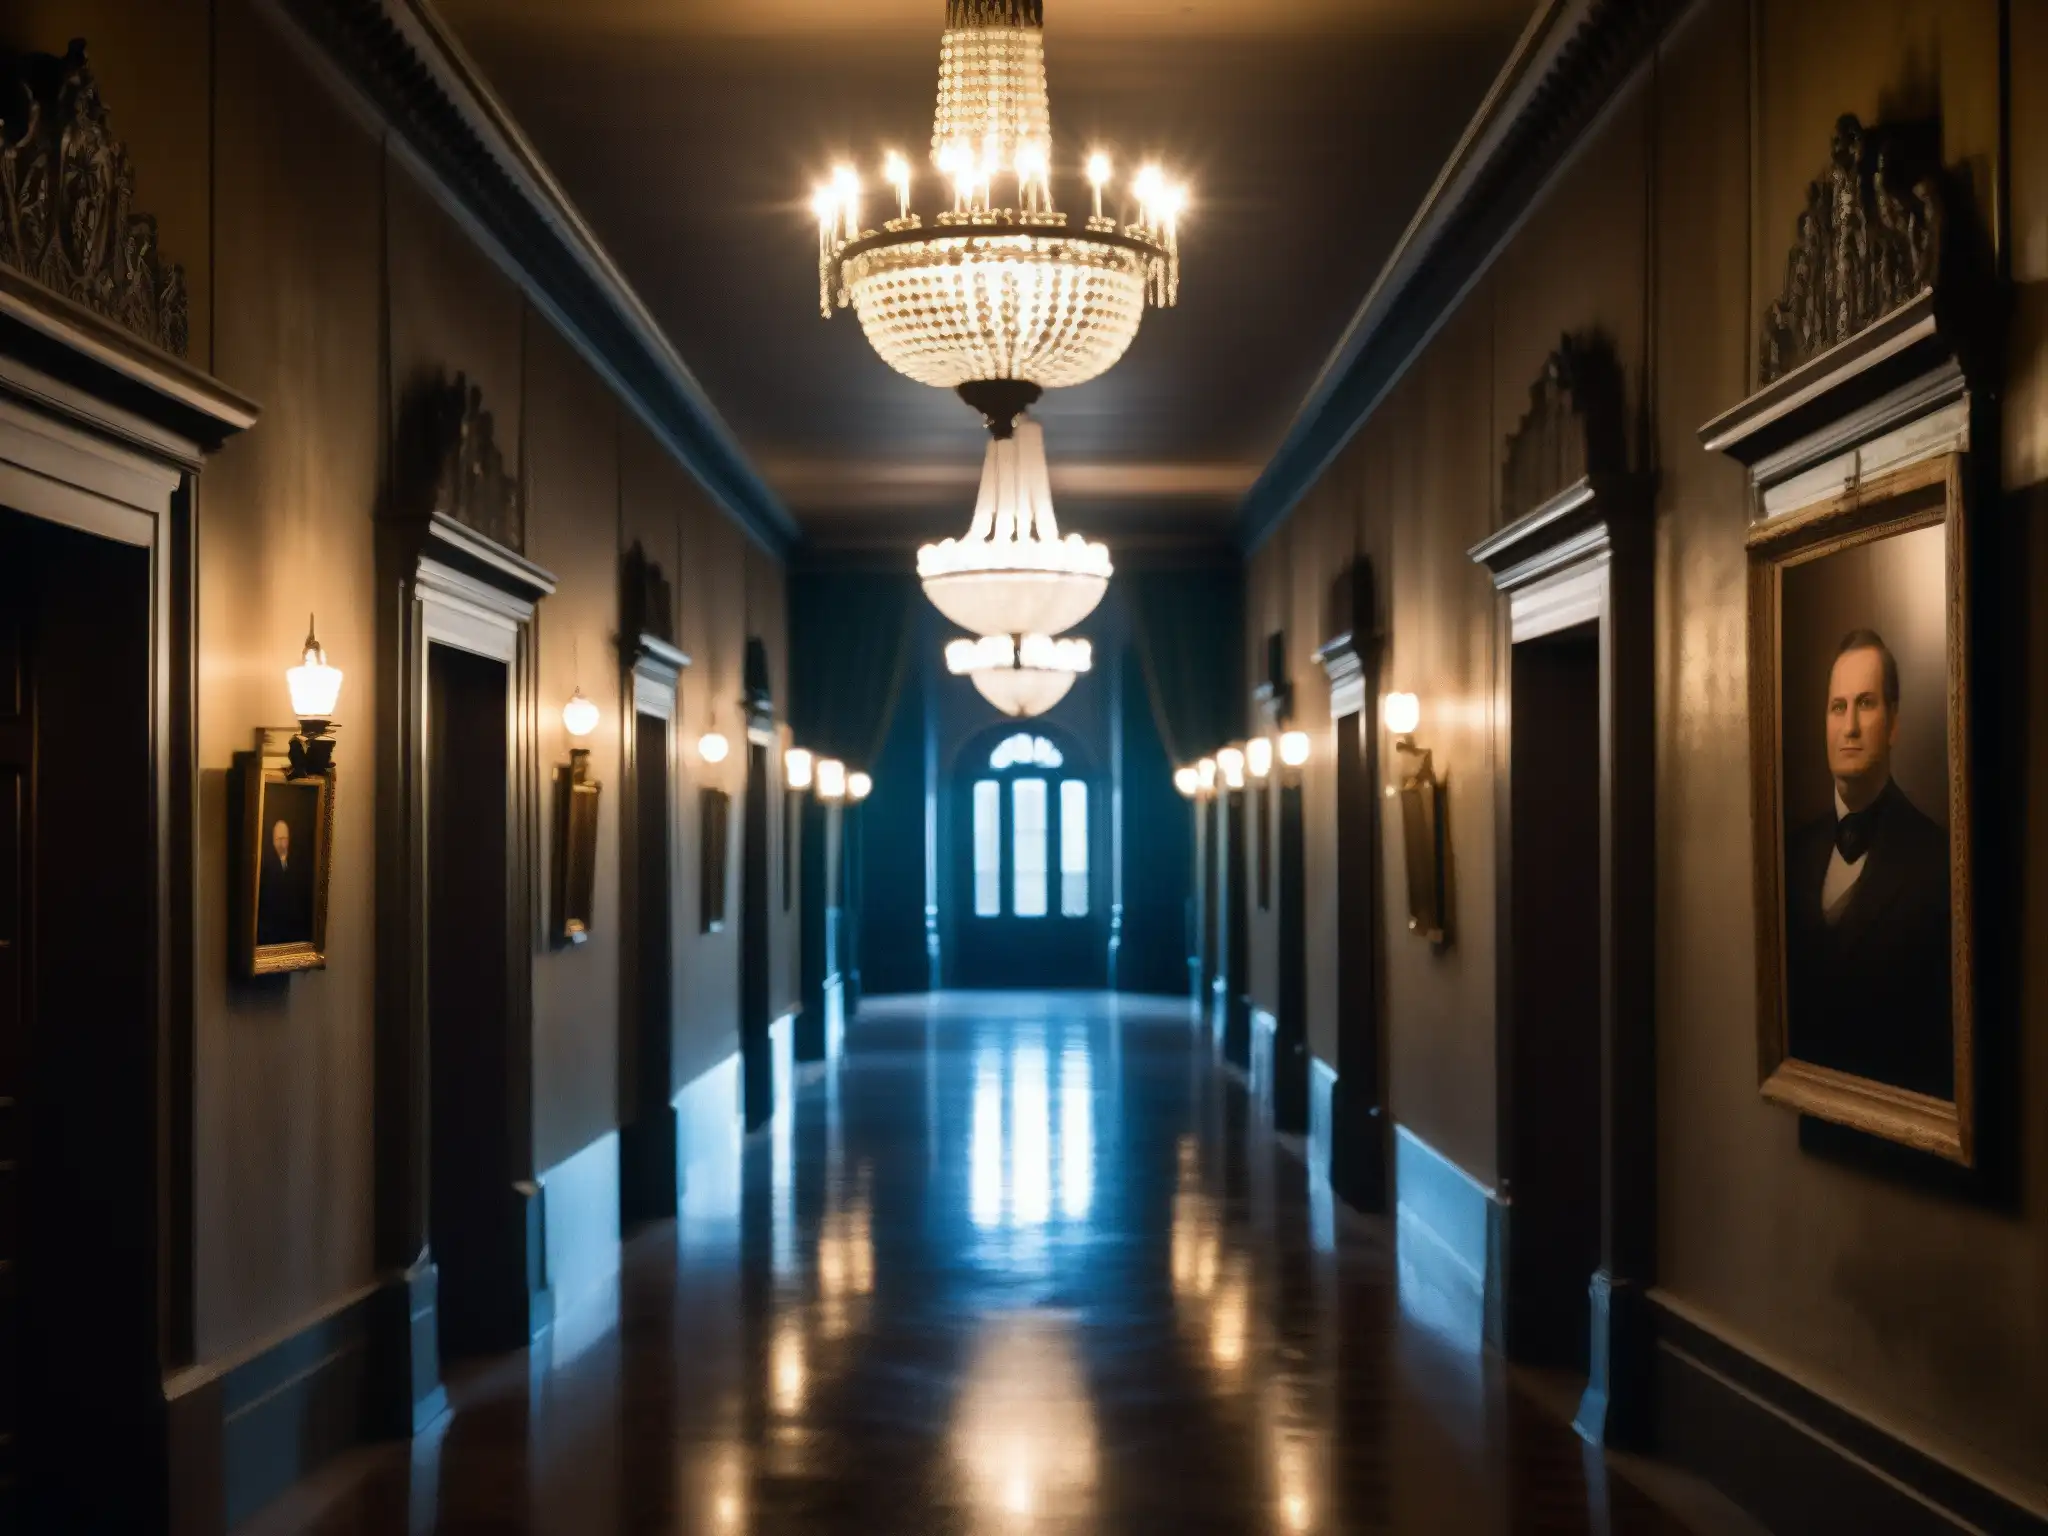 Un pasillo sombrío en un antiguo palacio gubernamental con una atmósfera fantasmal, rodeado de retratos de funcionarios